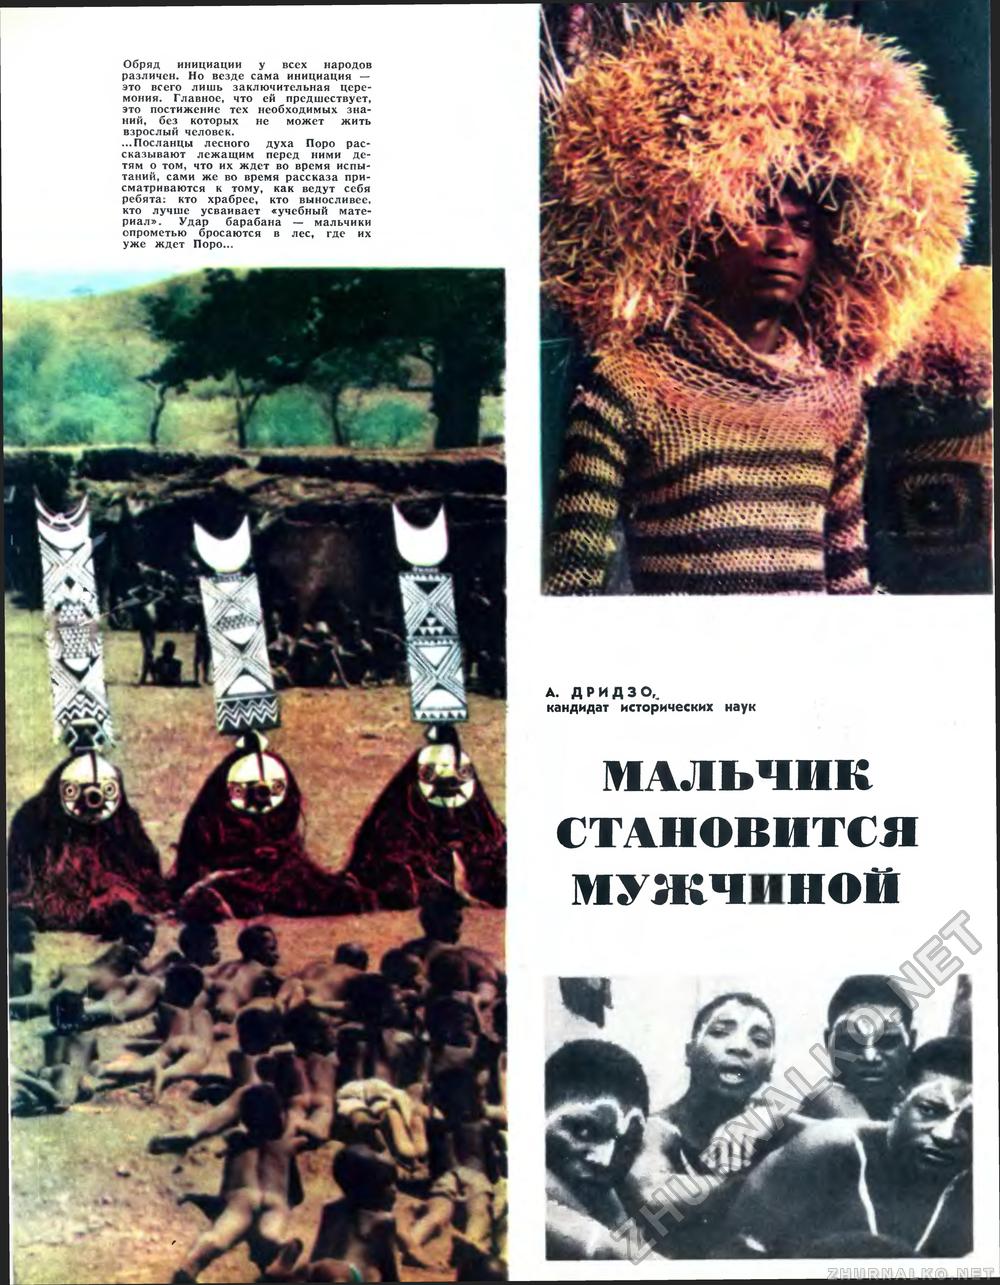   1971-08,  18